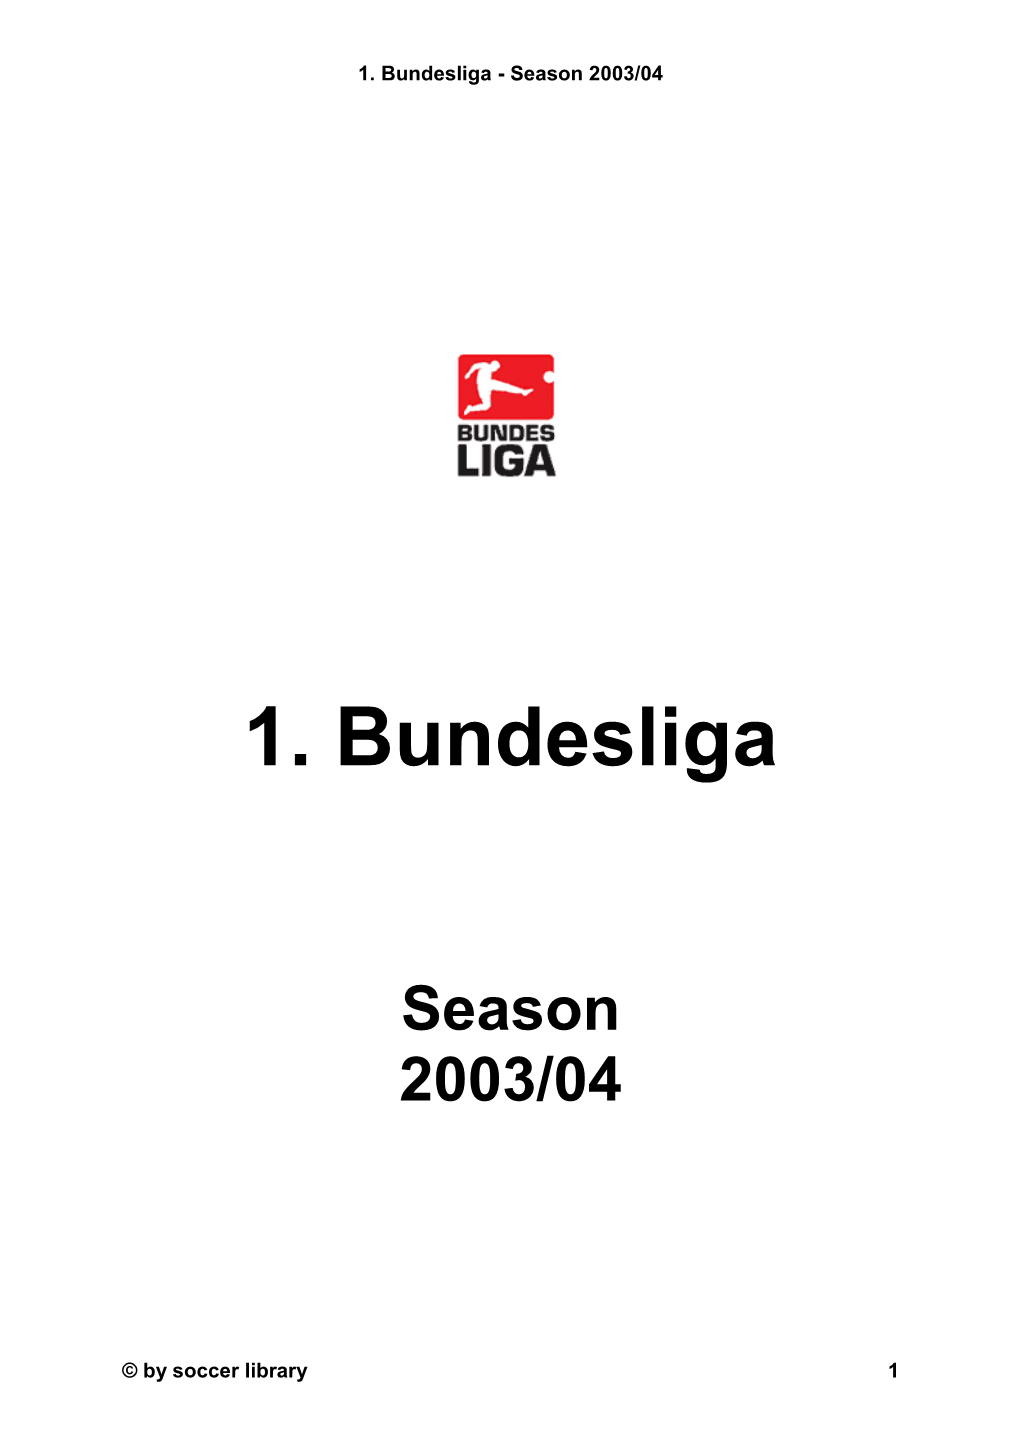 1. Bundesliga - Season 2003/04